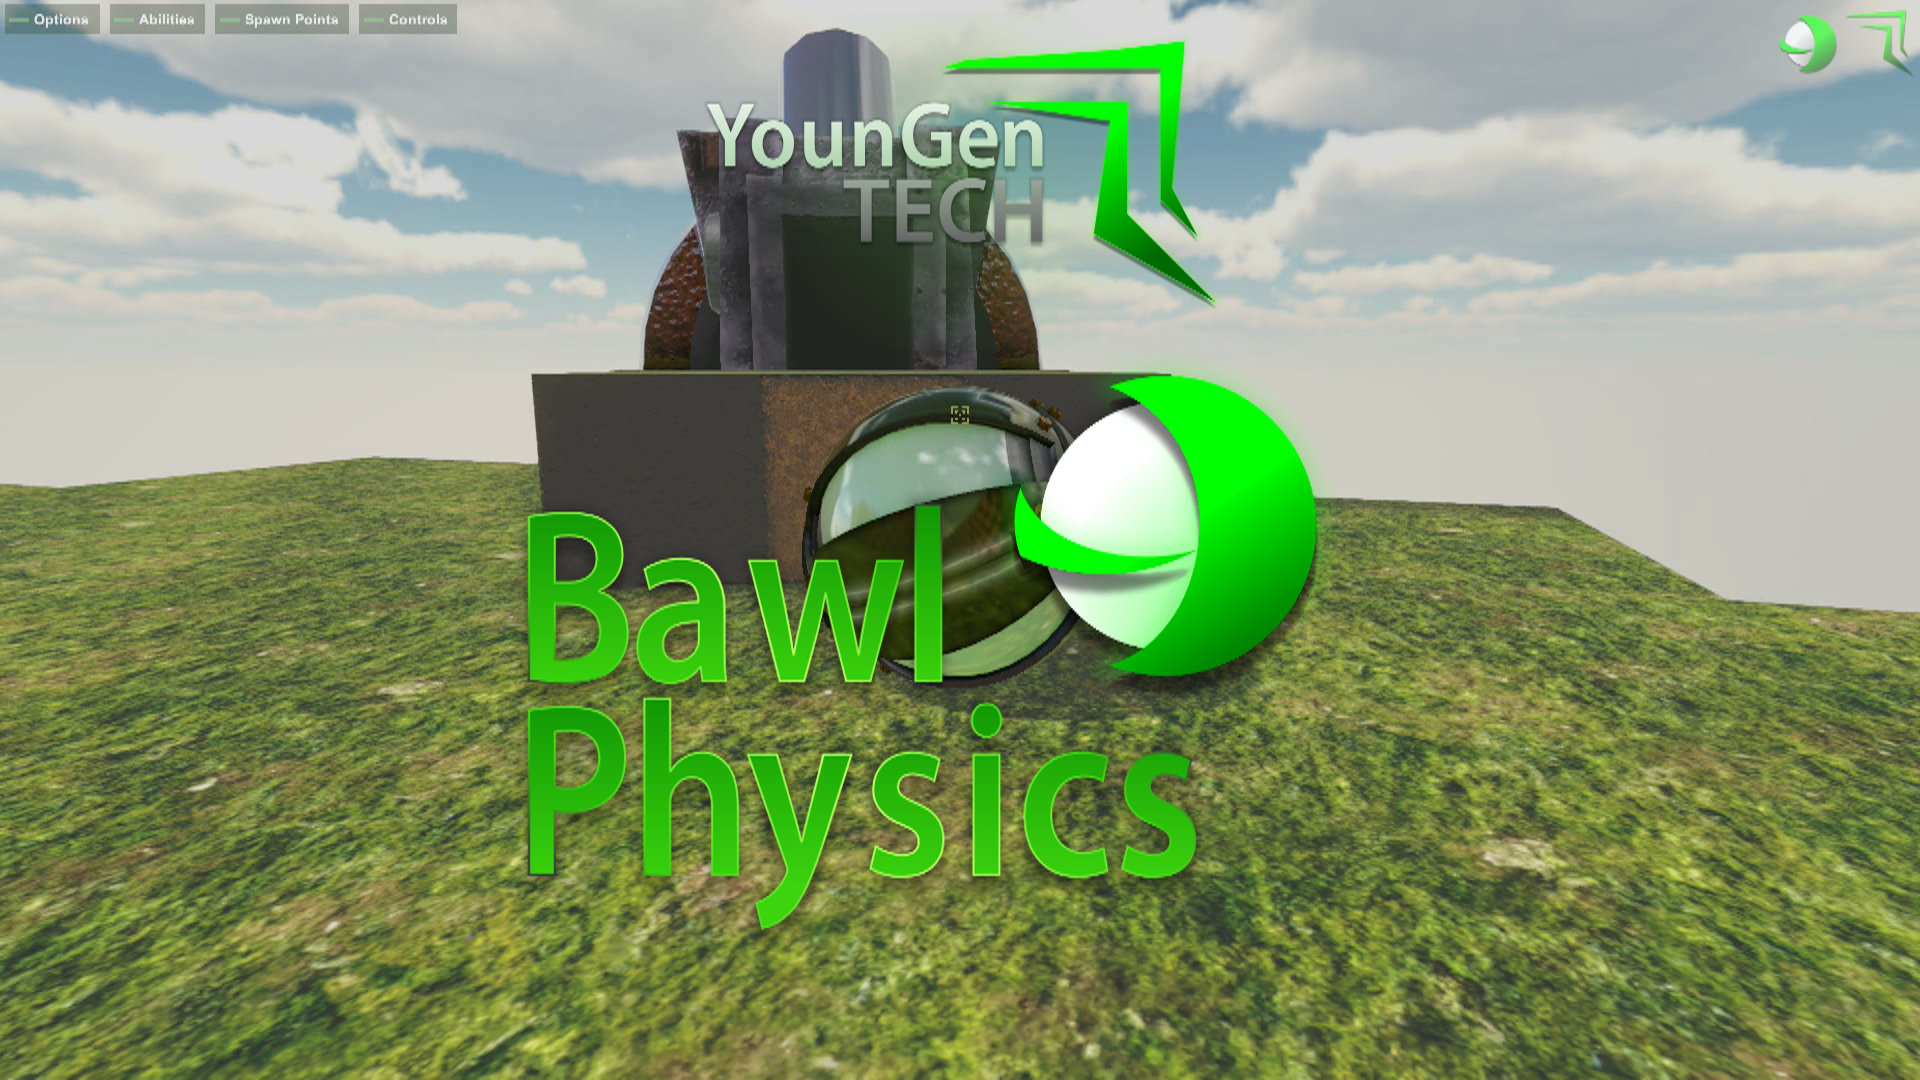 Bawl Physics